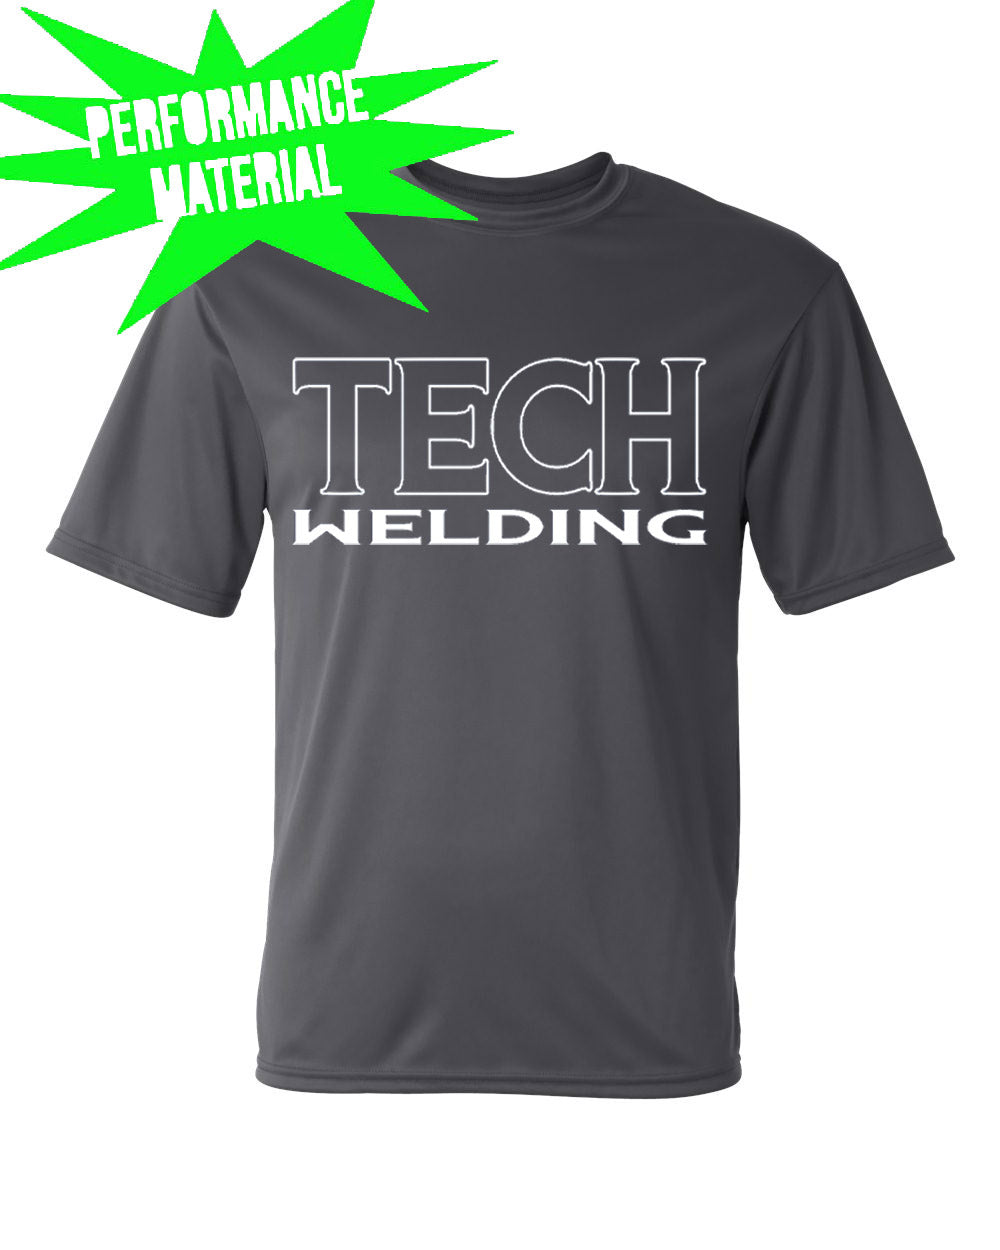 Sussex tech Welding Performance Material design 3 T-Shirt